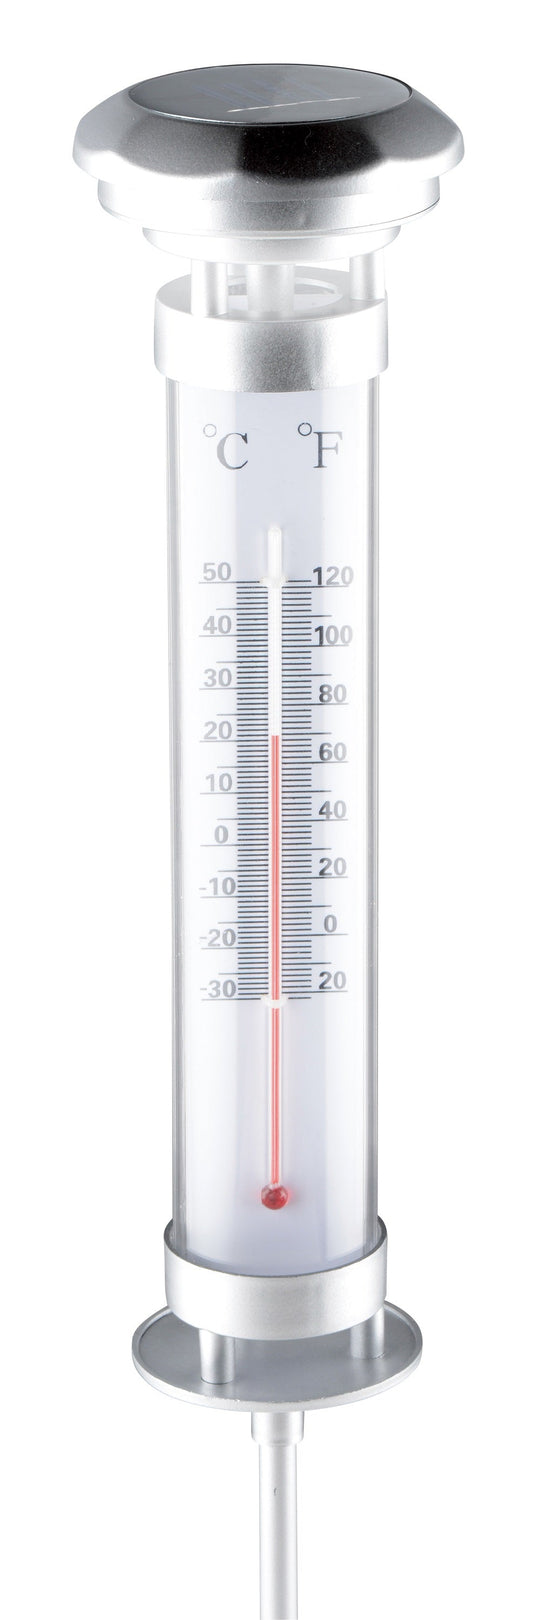 Solar tuinlamp-thermometer - Functionele verlichting en temperatuurweergave voor buiten - Bivakshop